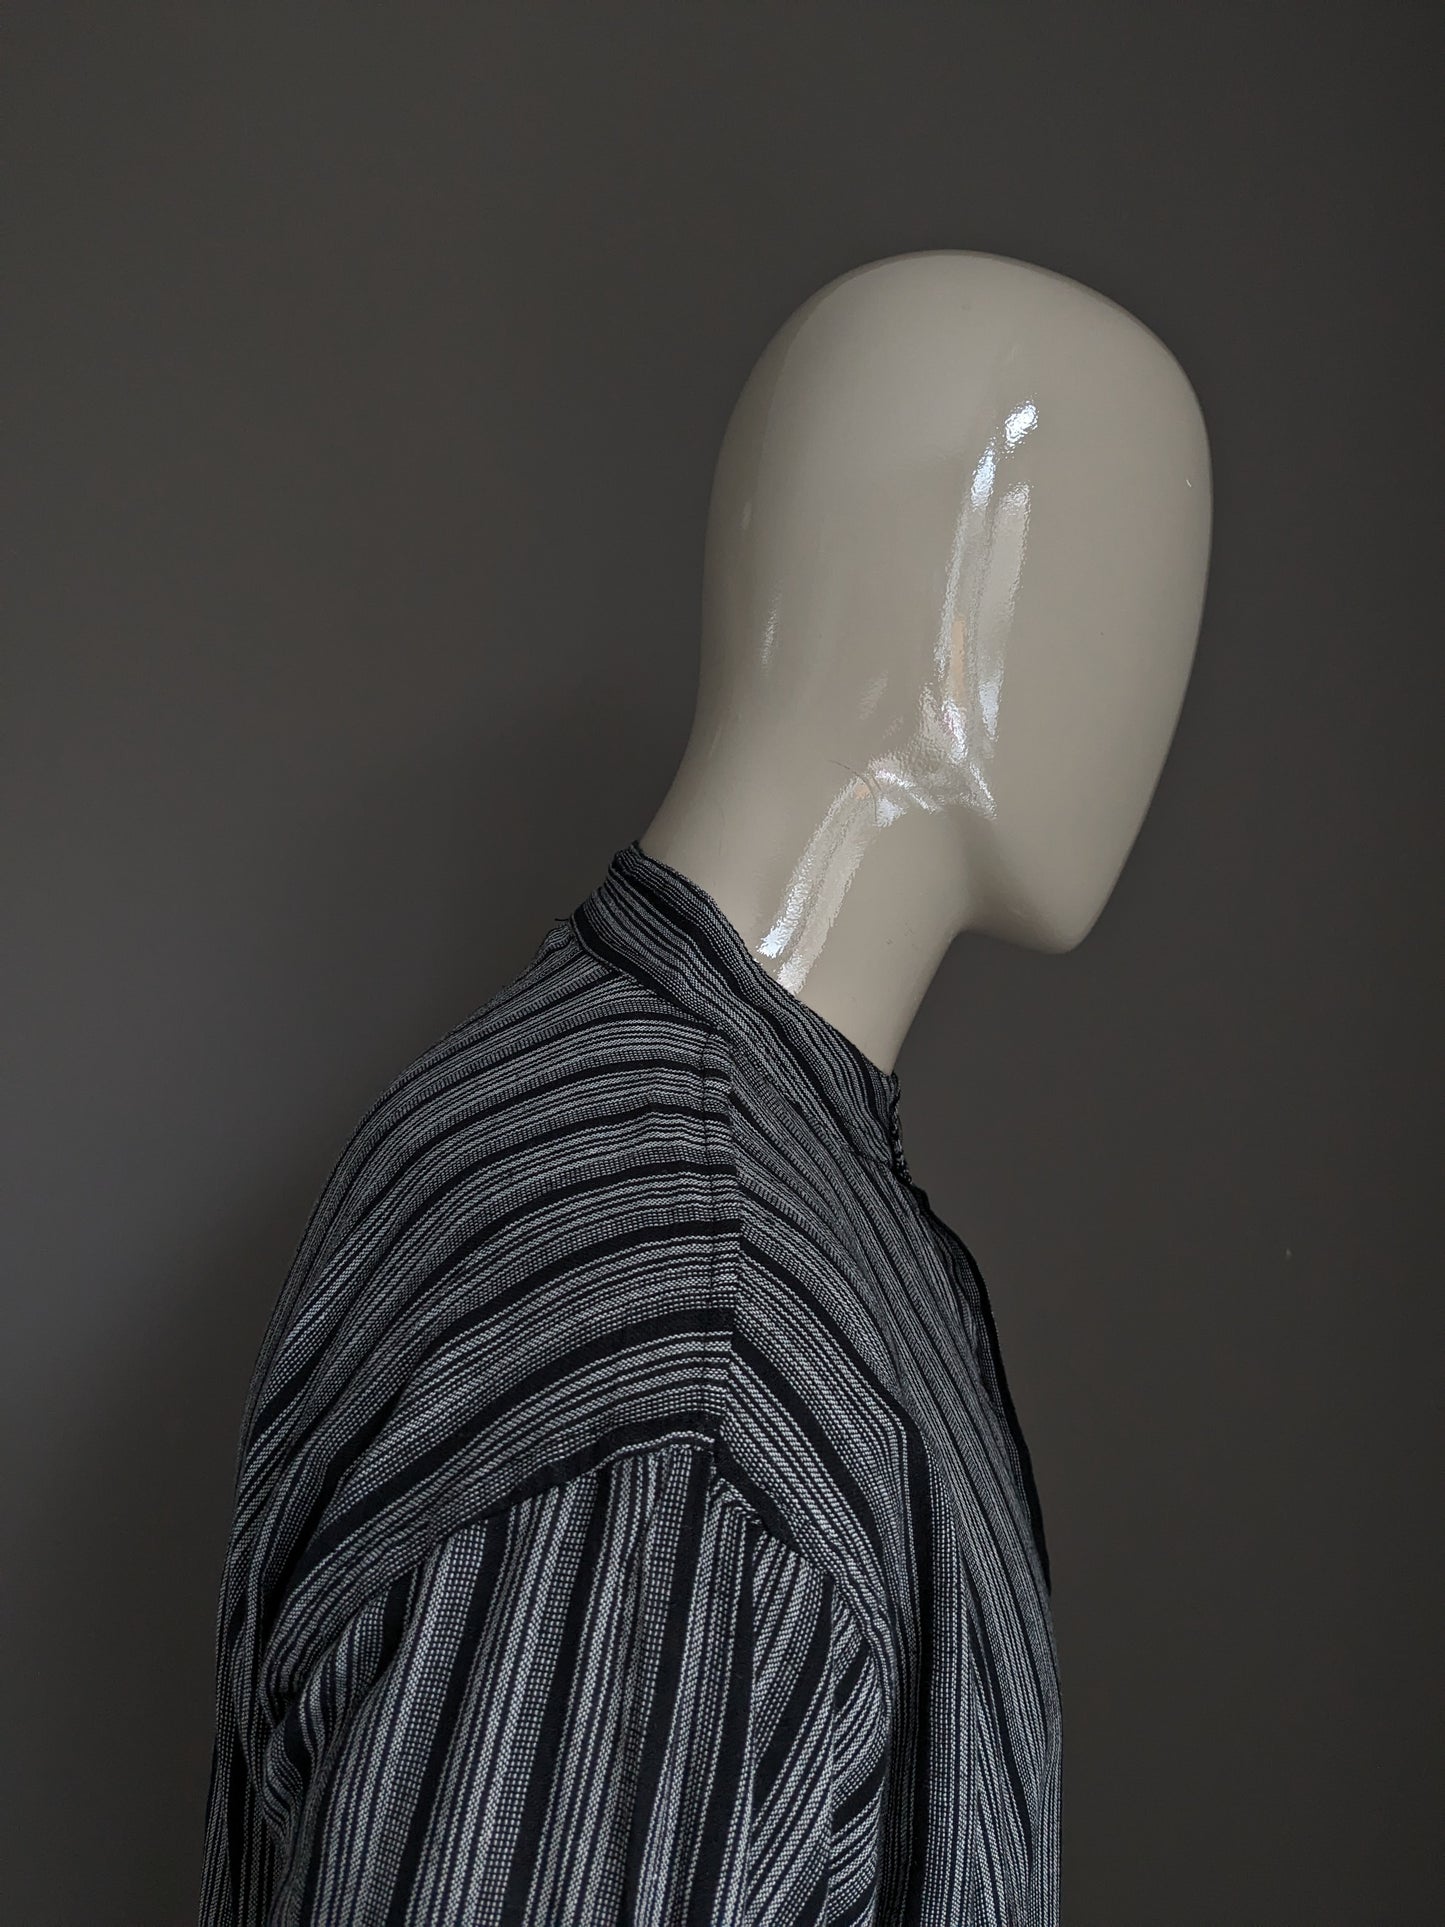 Vintage Yuli Polo -Pullover / Hemd mit erhöhtem / Bauern / Mao -Kragen. Schwarz grau mit Tasche gestreift. Größe xl.